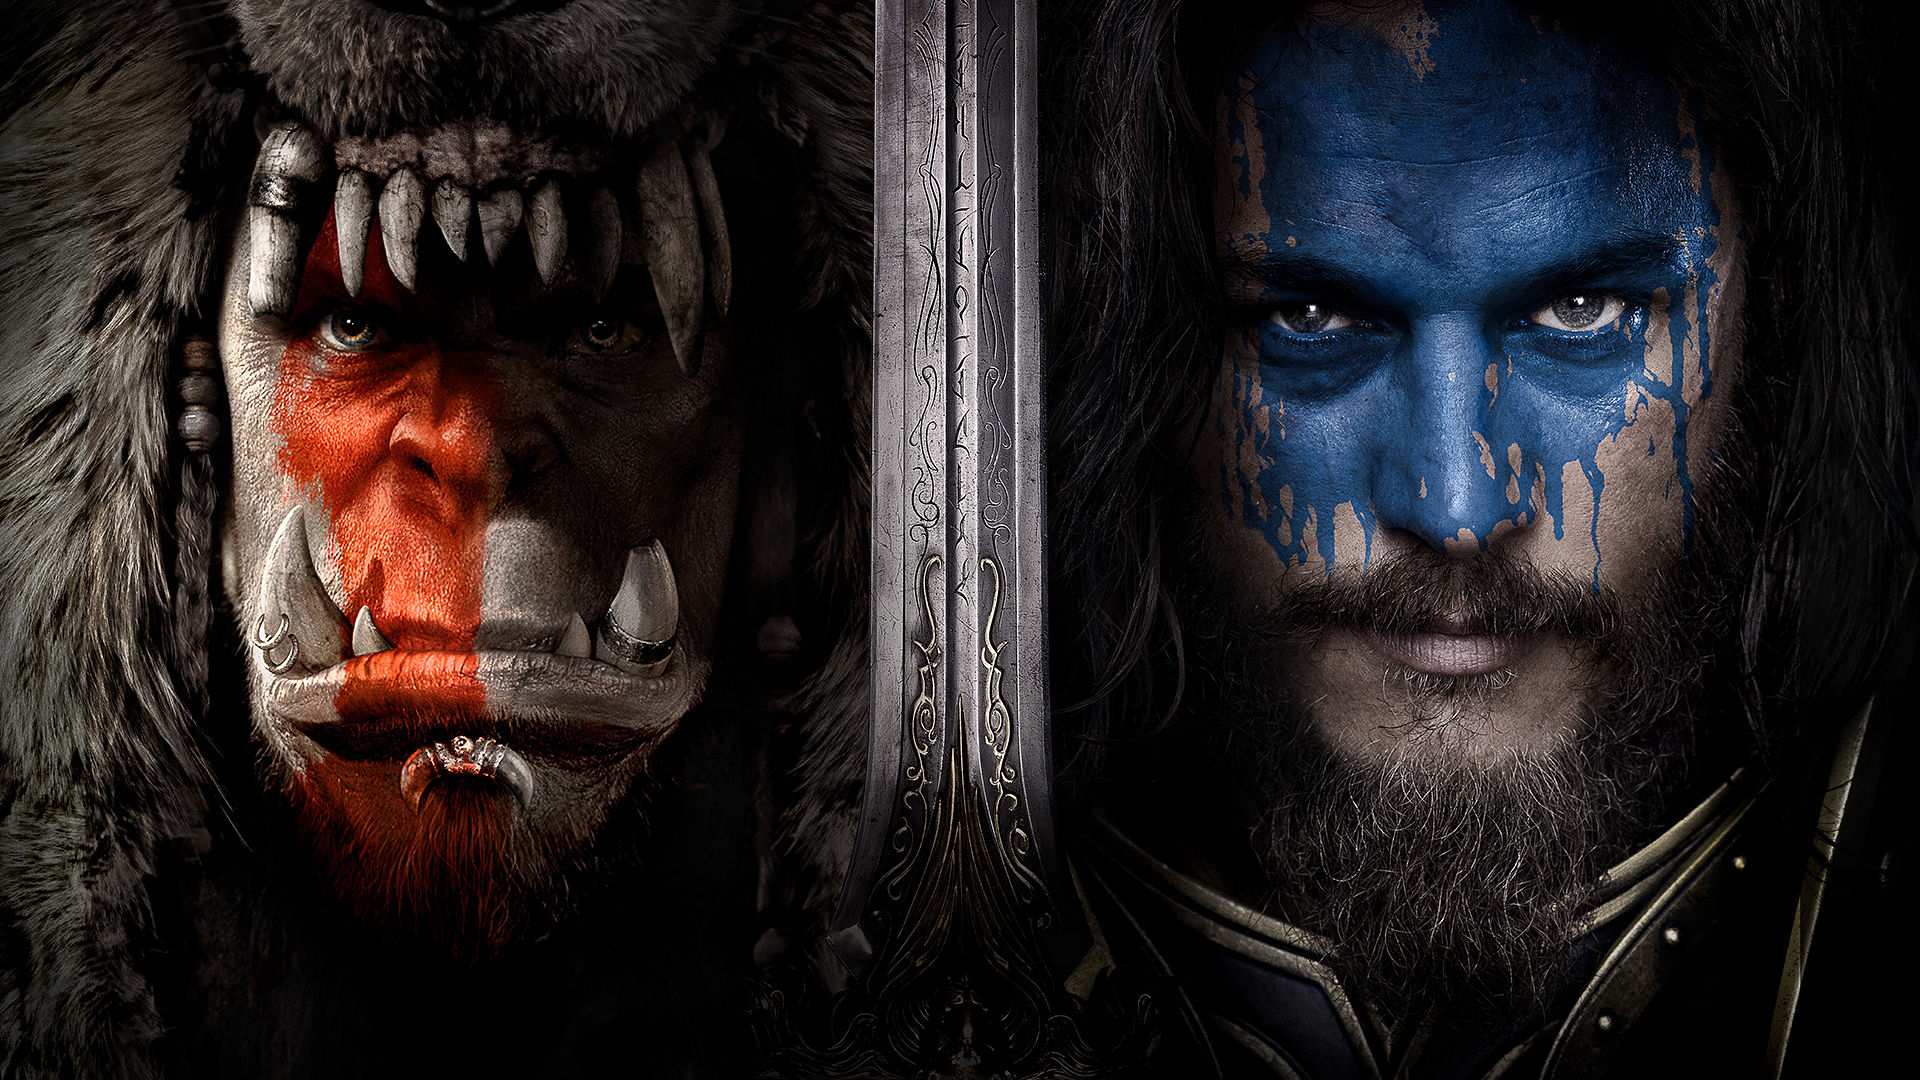 Warcraft: A New Era of VFX